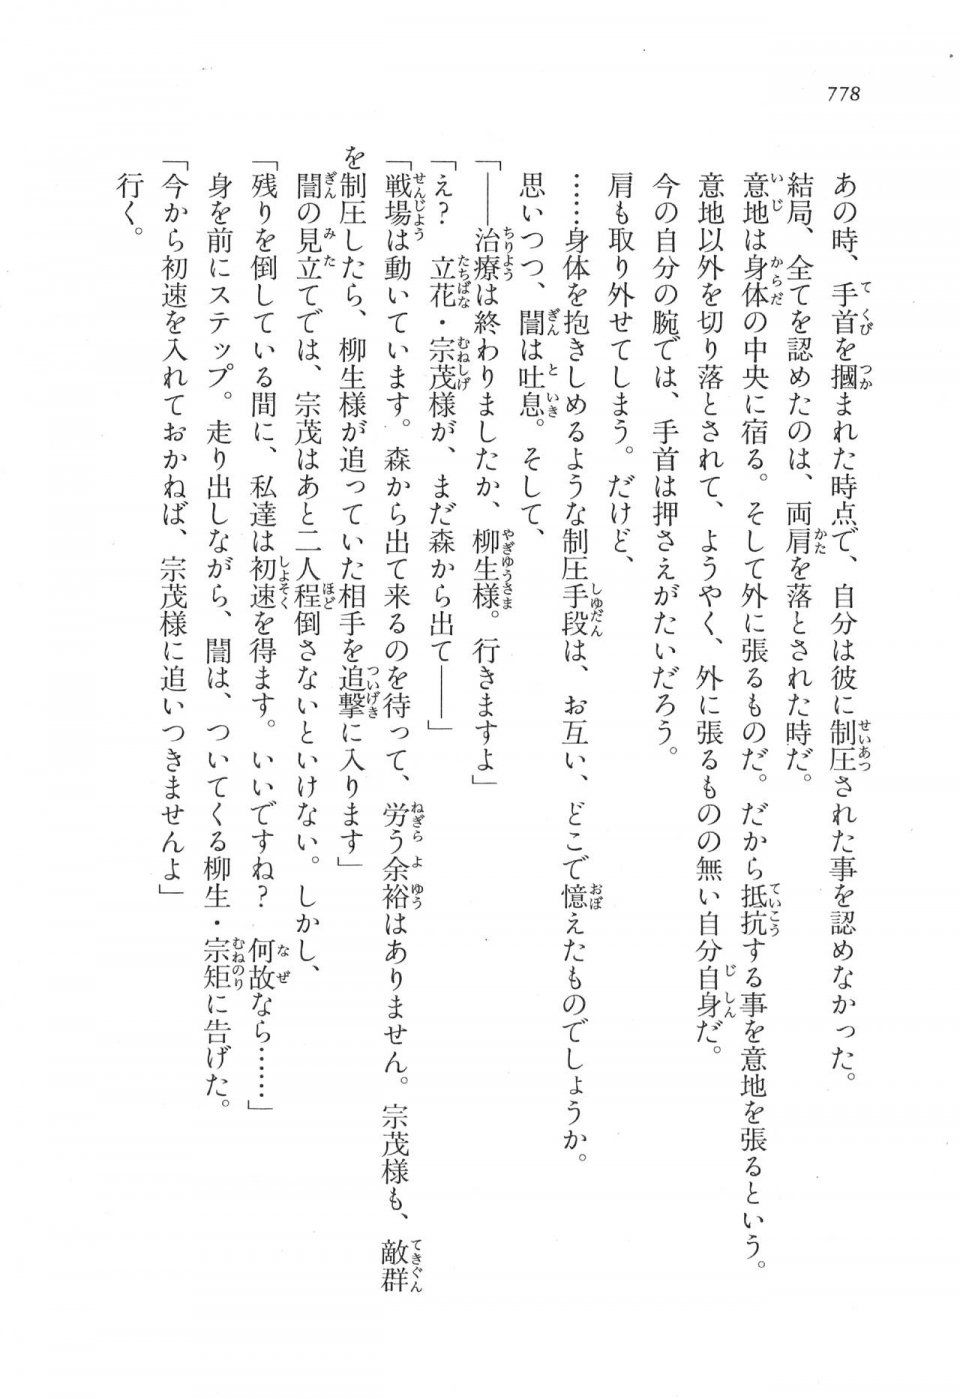 Kyoukai Senjou no Horizon LN Vol 17(7B) - Photo #780